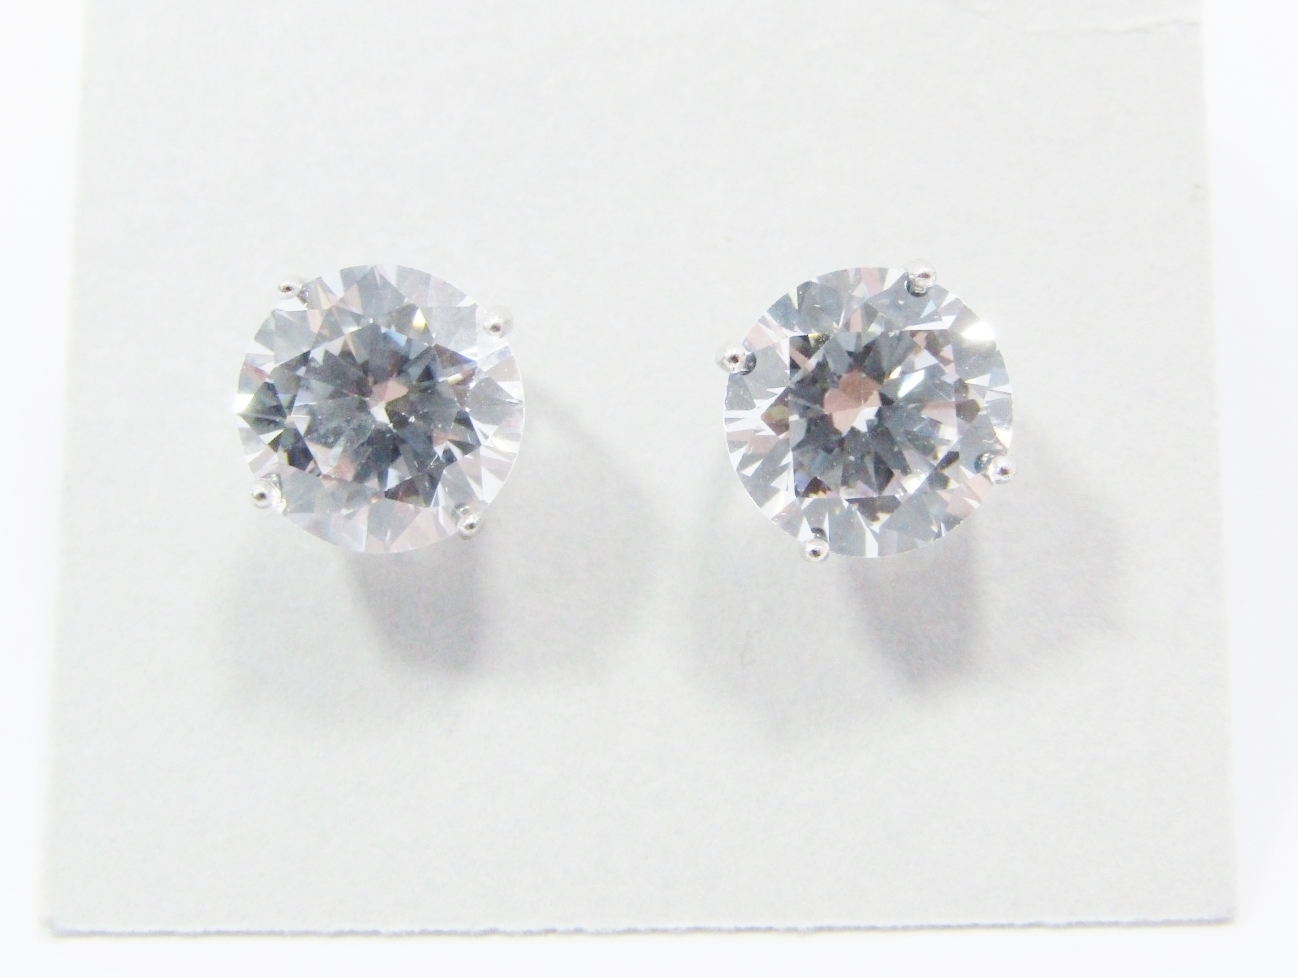 An Elegant Pair of Zirconia Earrings in Sterling Silver.